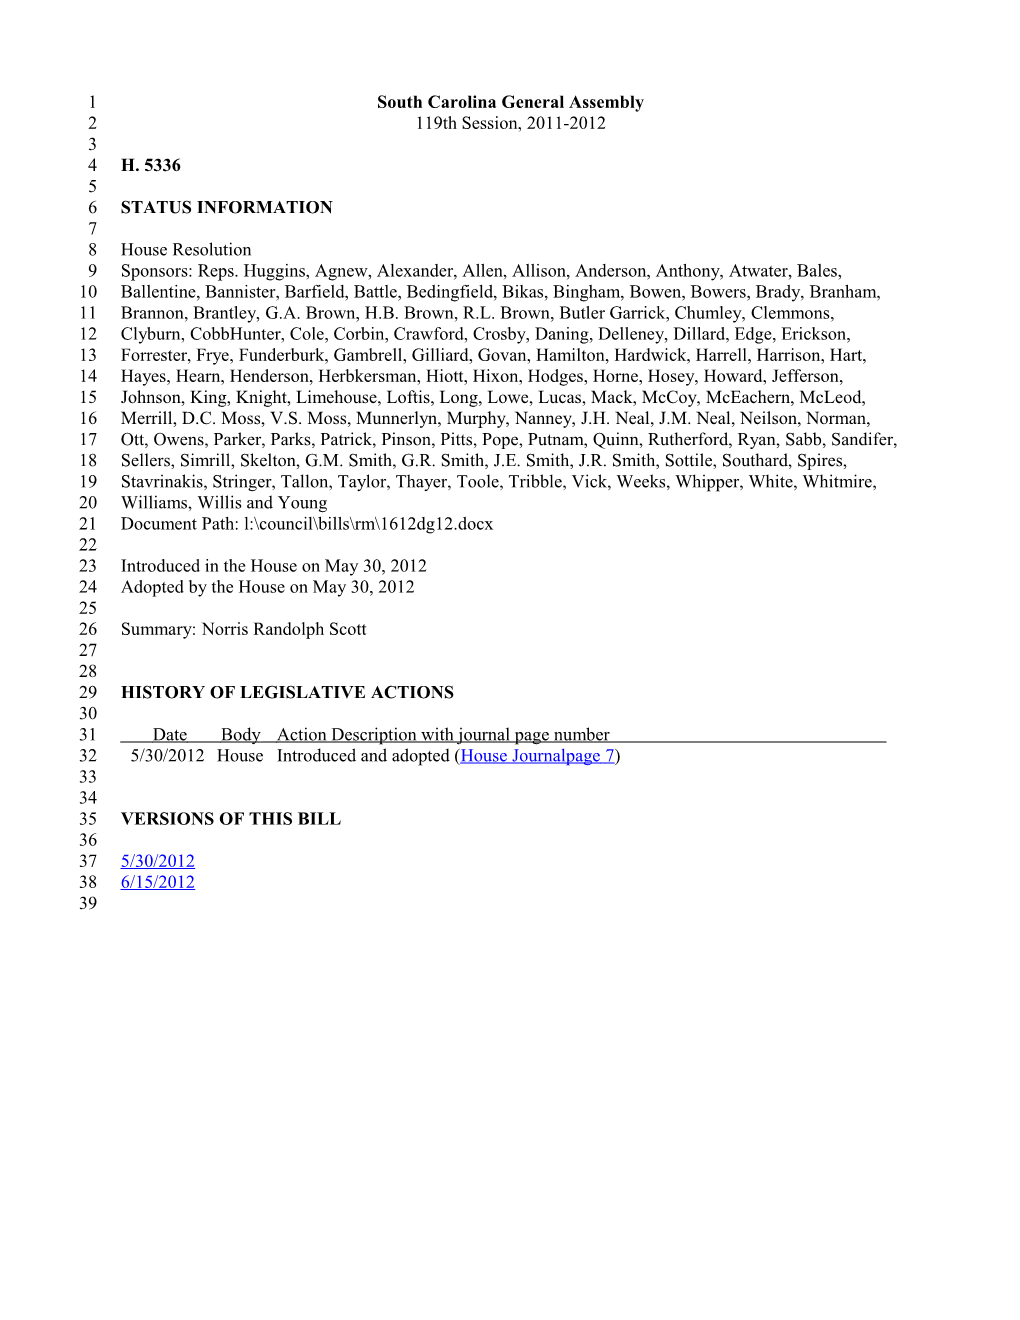 2011-2012 Bill 5336: Norris Randolph Scott - South Carolina Legislature Online